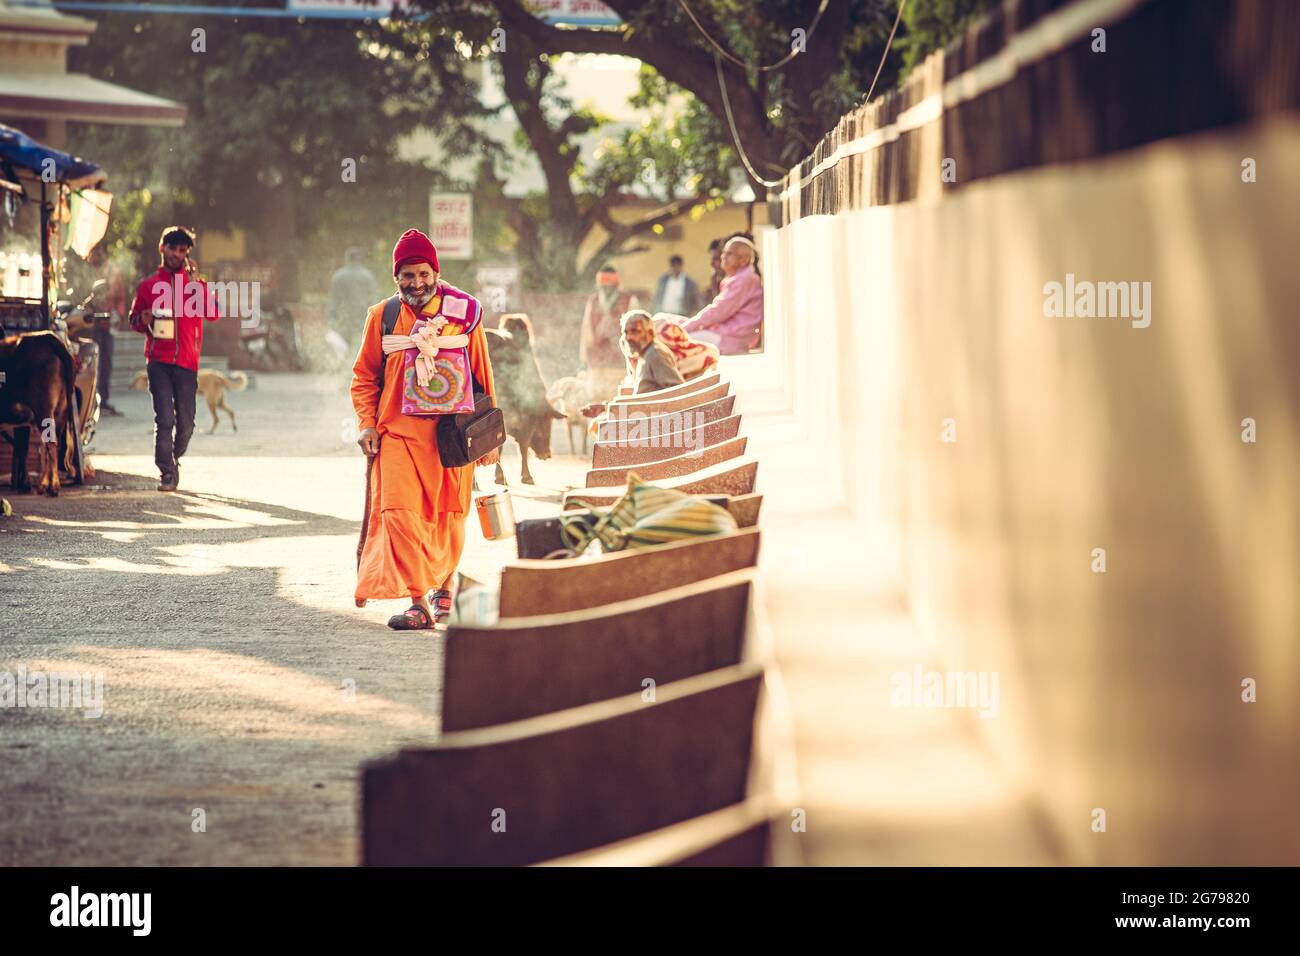 Street scene in India Stock Photo